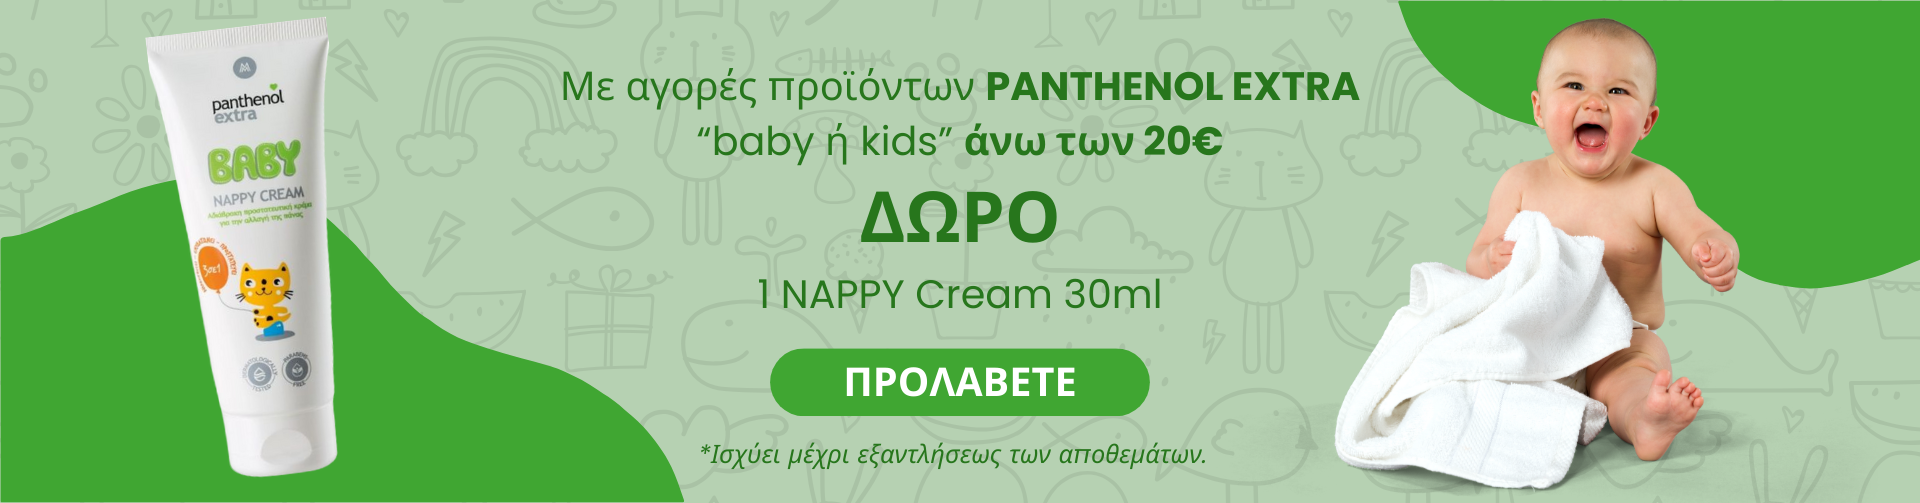 ΔΩΡΟ 1 NAPPY Cream 30ml